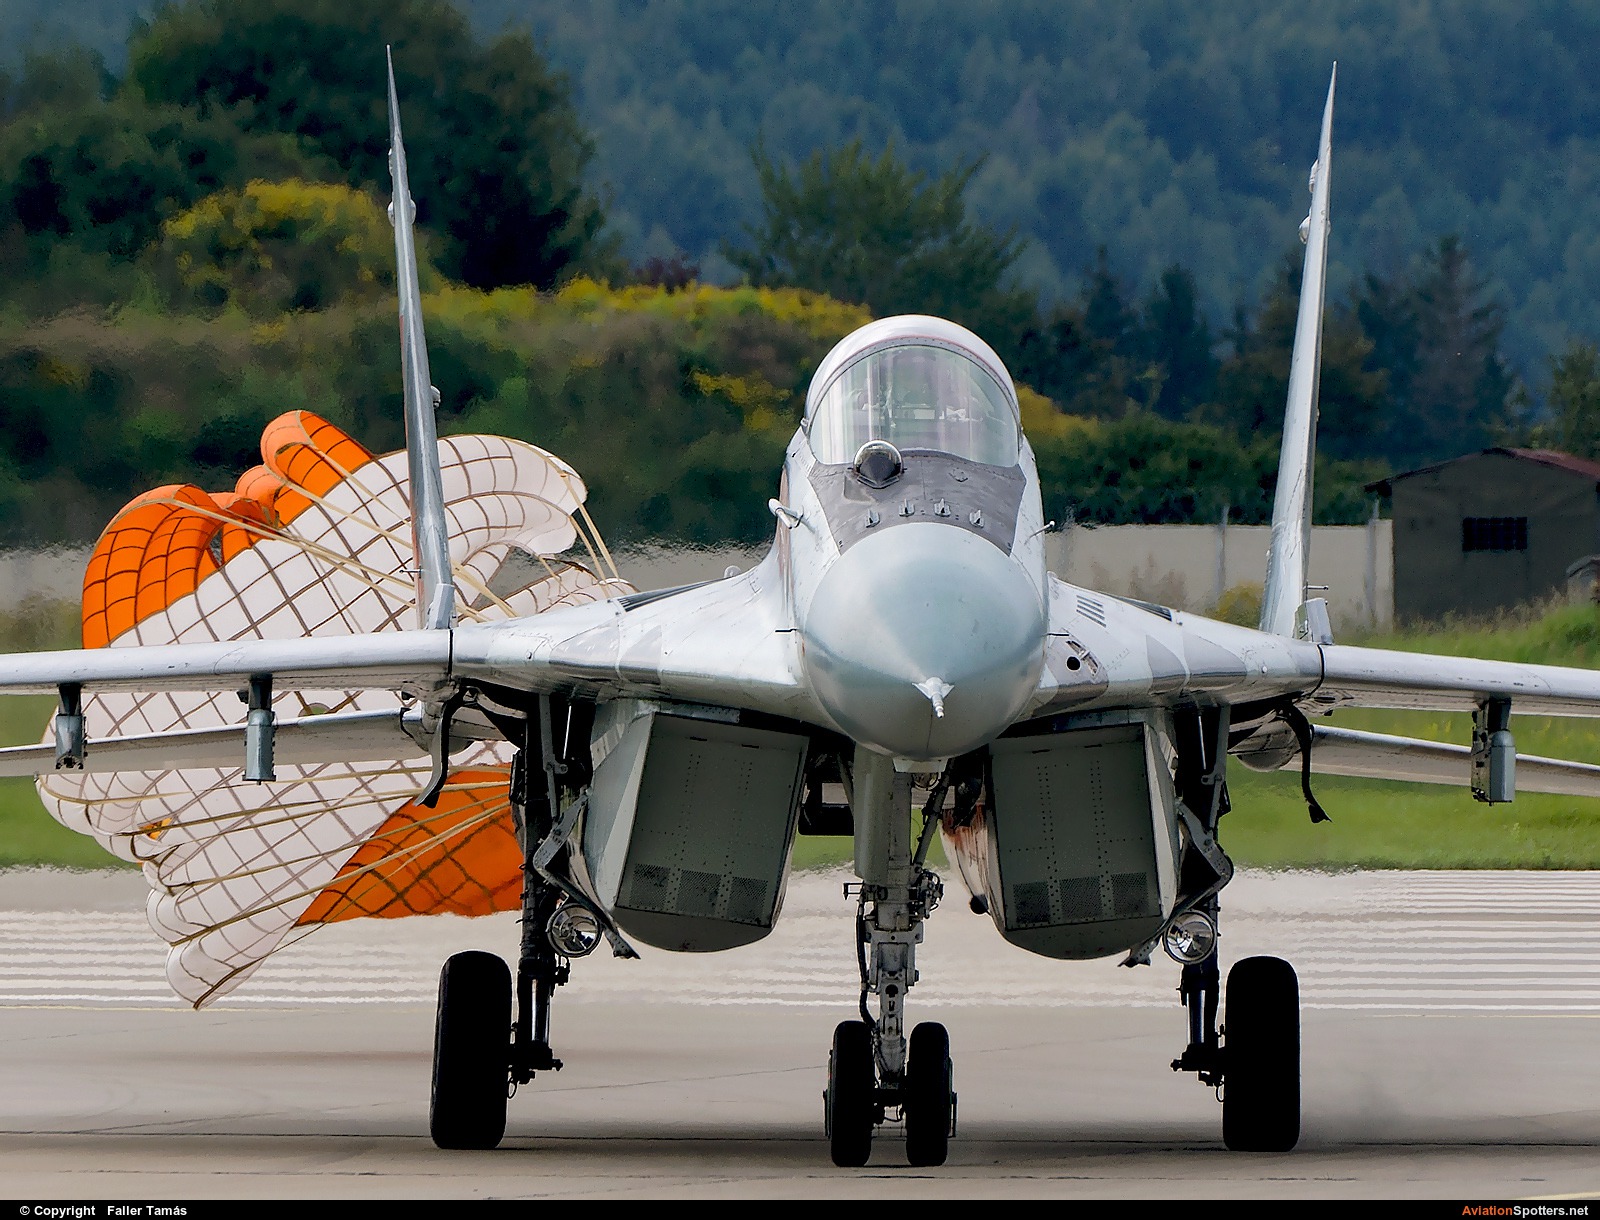 Slovakia - Air Force  -  MiG-29AS  (6425) By Faller Tamás (fallto78)